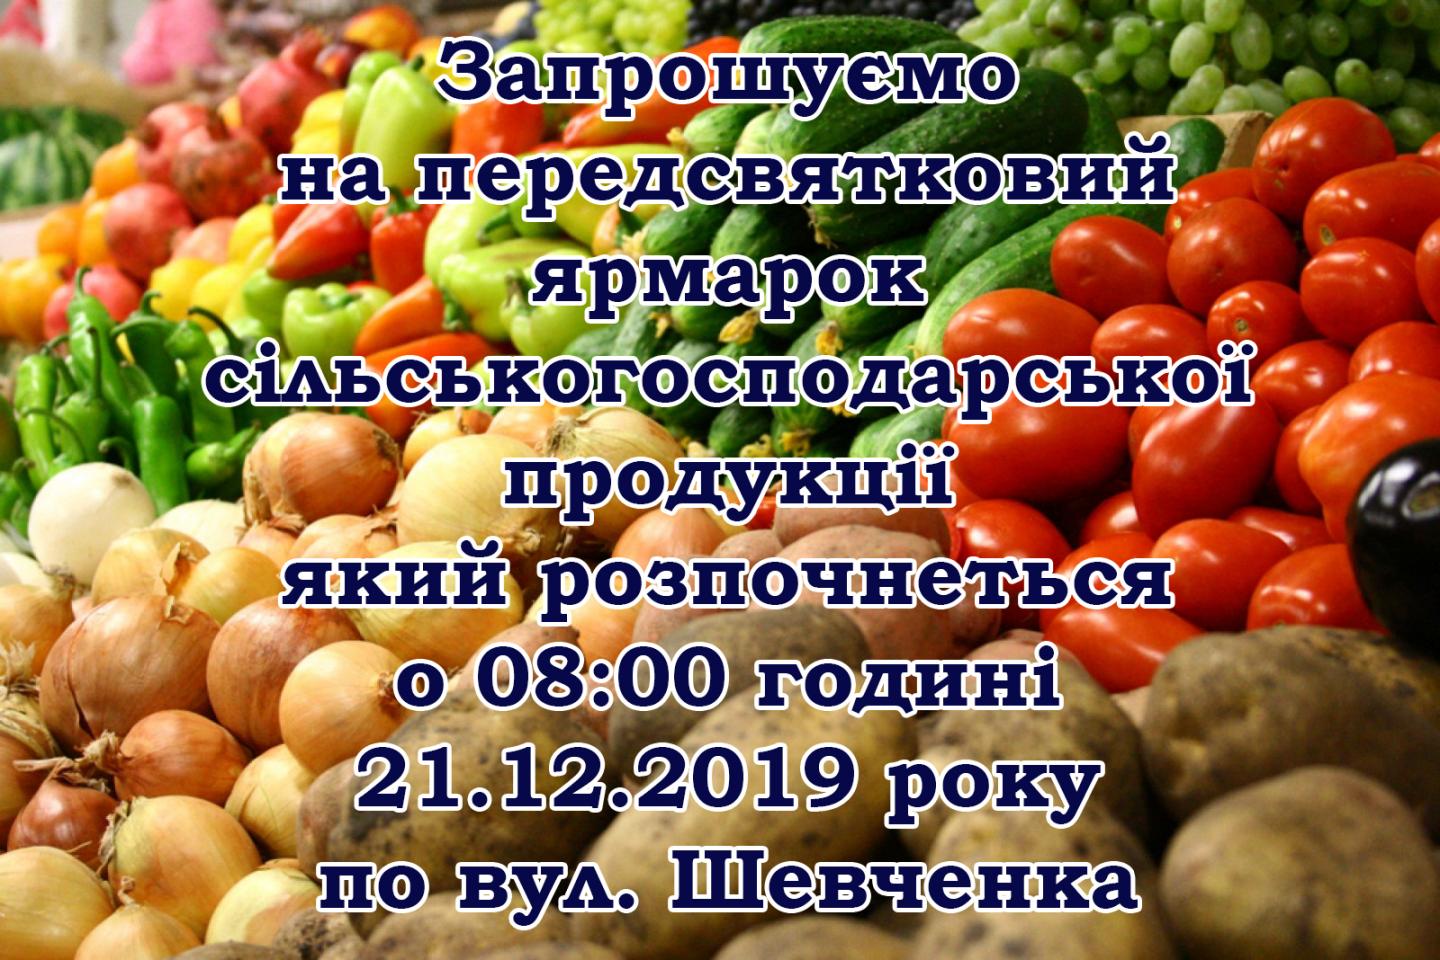 http://dunrada.gov.ua/uploadfile/archive_news/2019/12/16/2019-12-16_3837/images/images-94682.jpg